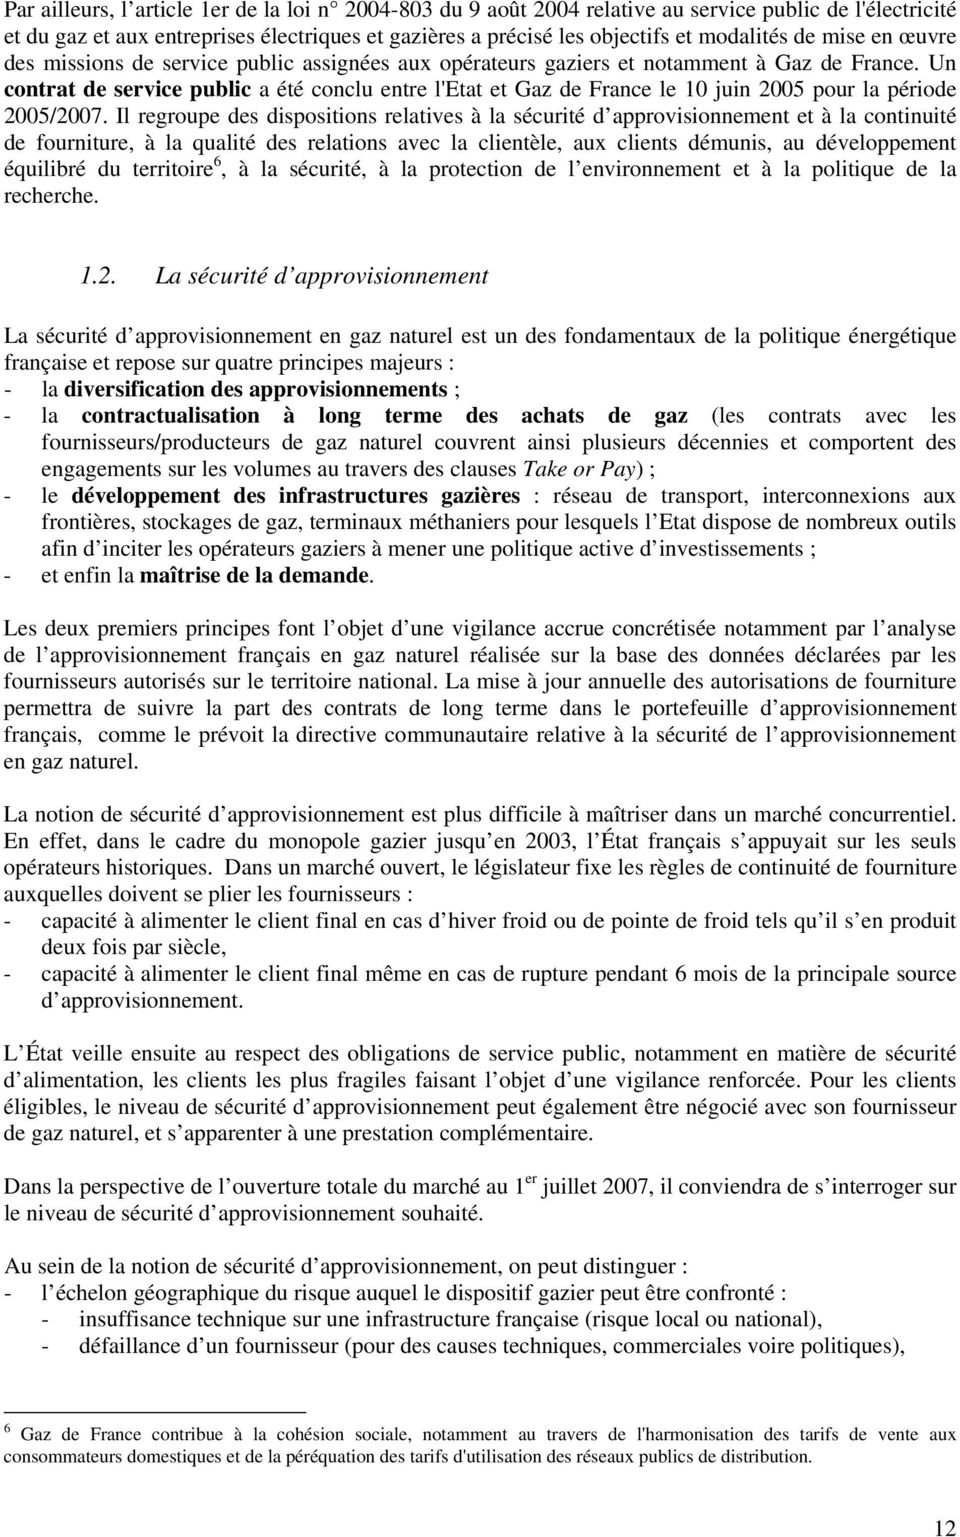 Un contrat de service public a été conclu entre l'etat et Gaz de France le 10 juin 2005 pour la période 2005/2007.